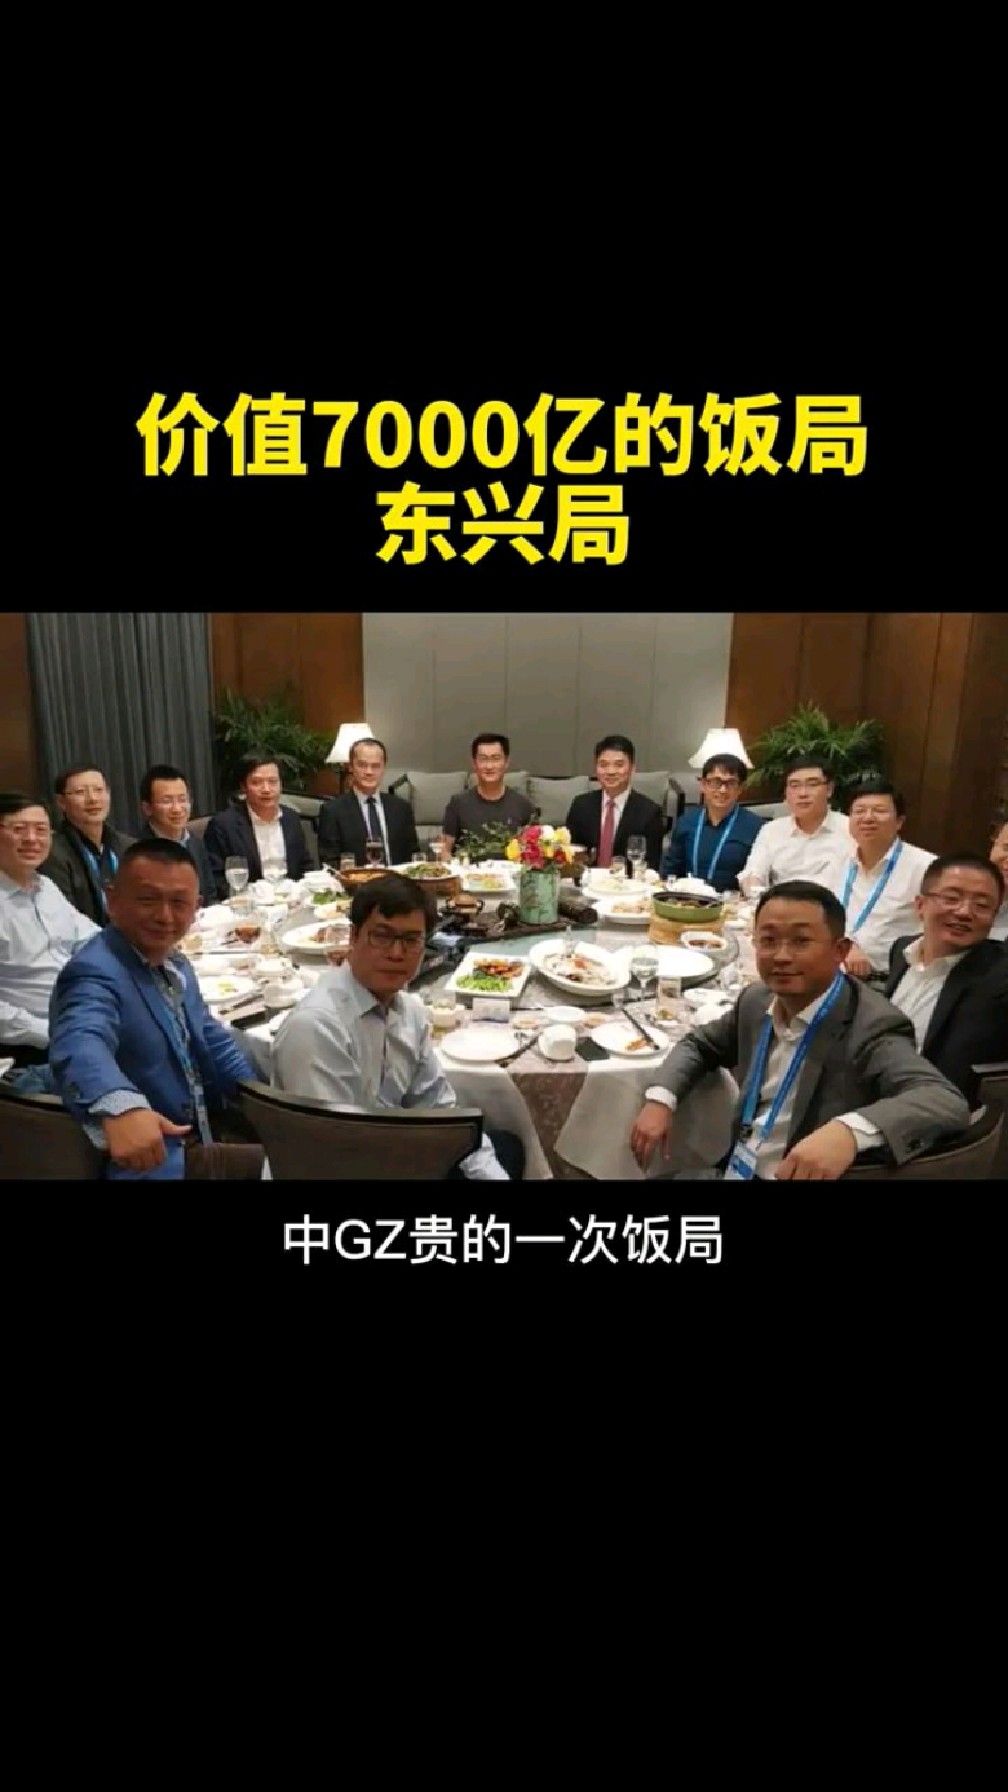 价值7000亿饭局叫东兴局除了马云很多大佬都到了